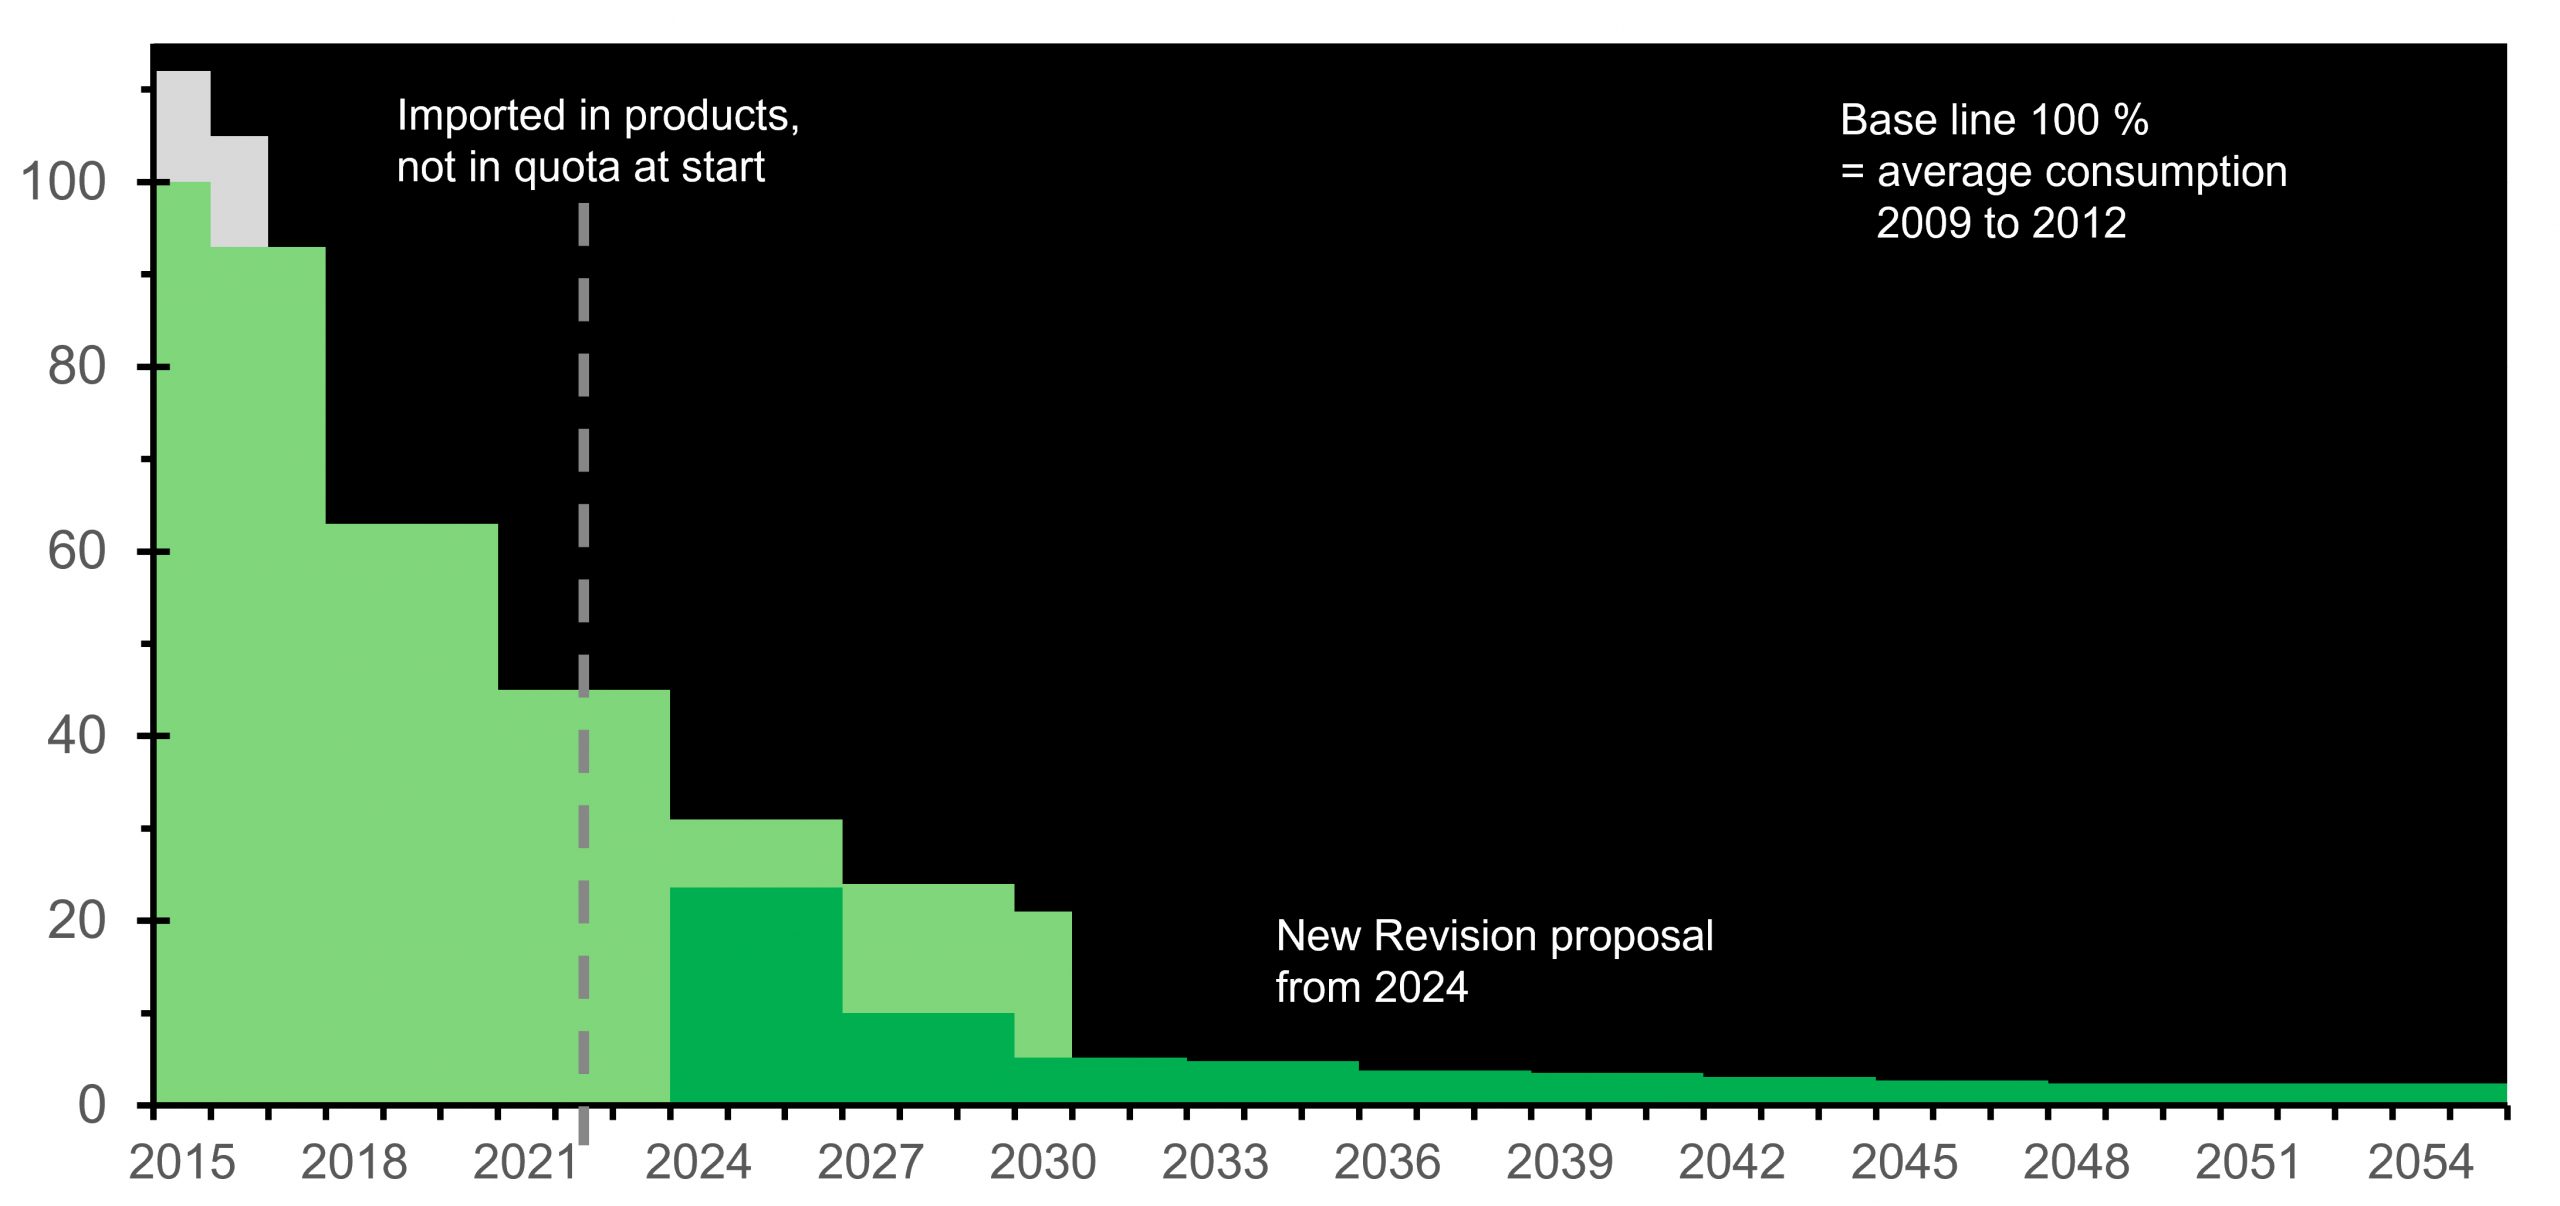 第 517/2014 号法规分阶段减排阶段（以百分比表示，显示为浅绿色，以 2015 年 100% 为起点）与 2024 年草拟分阶段减排（深绿色）对比。浅绿色：基本数量中未包含进口产品数量。